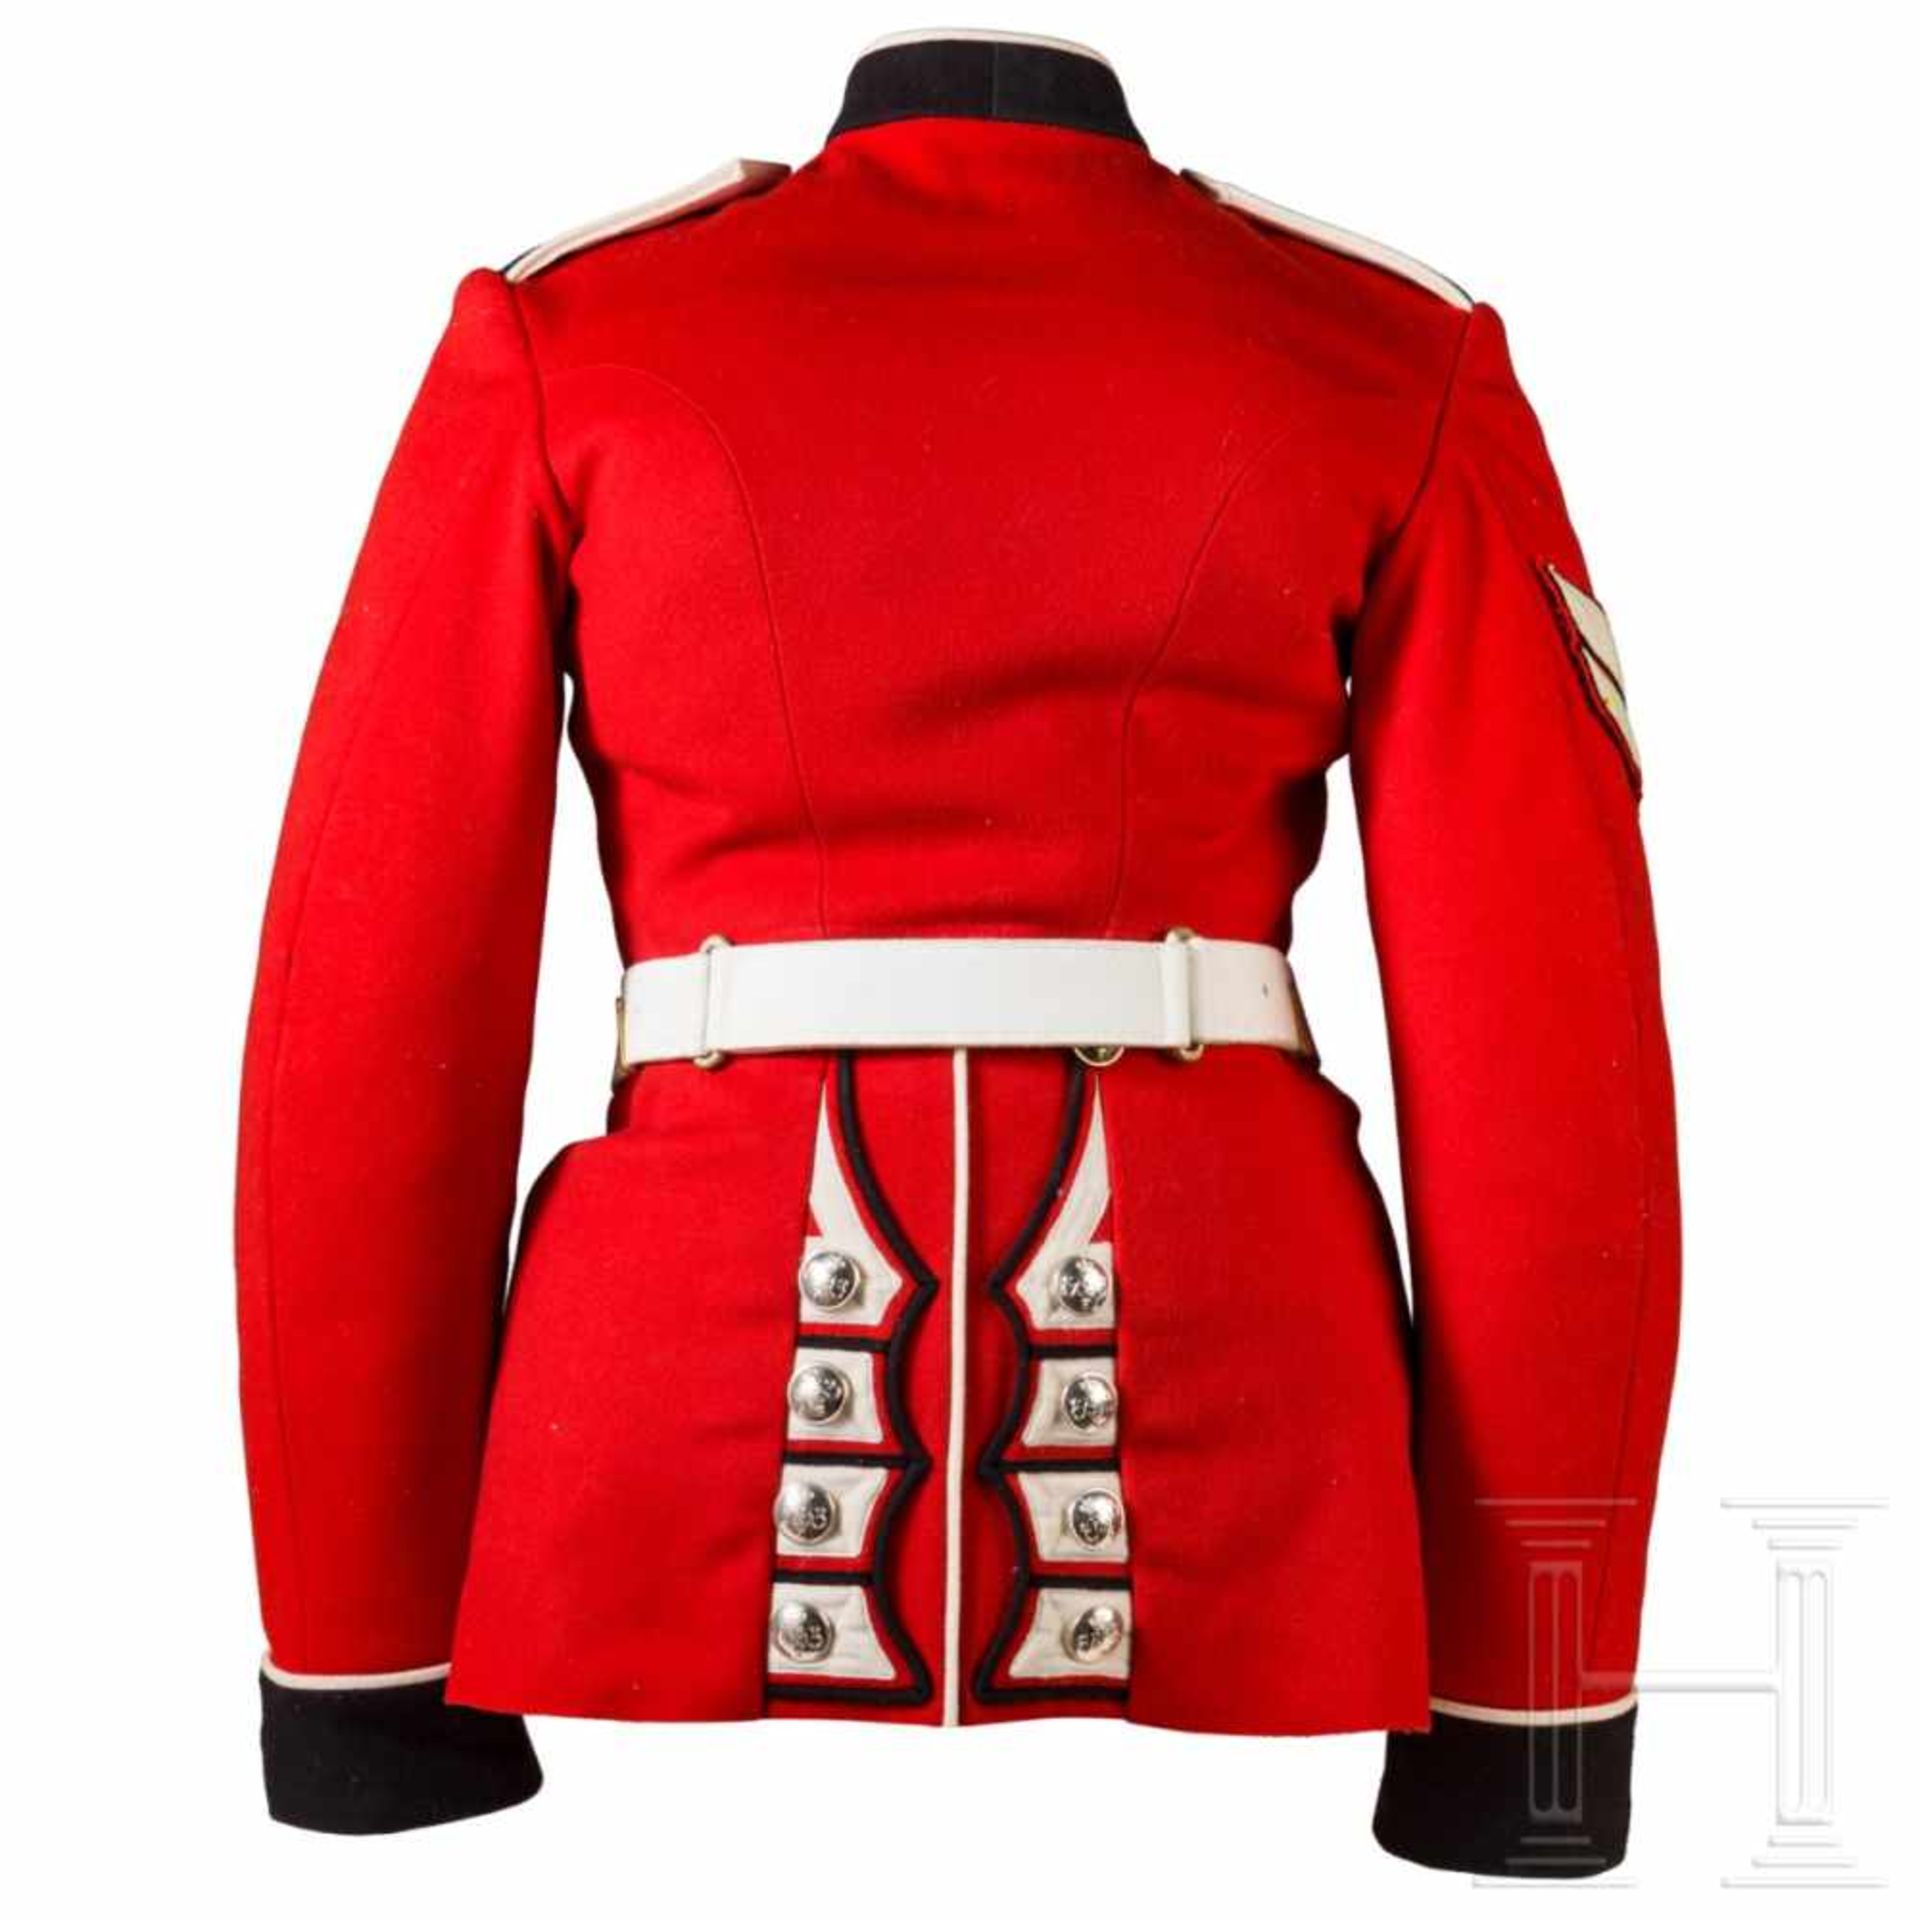 Uniformrock für einen Corporal der Grenadier Guards, 20. Jhdt. - Bild 2 aus 6